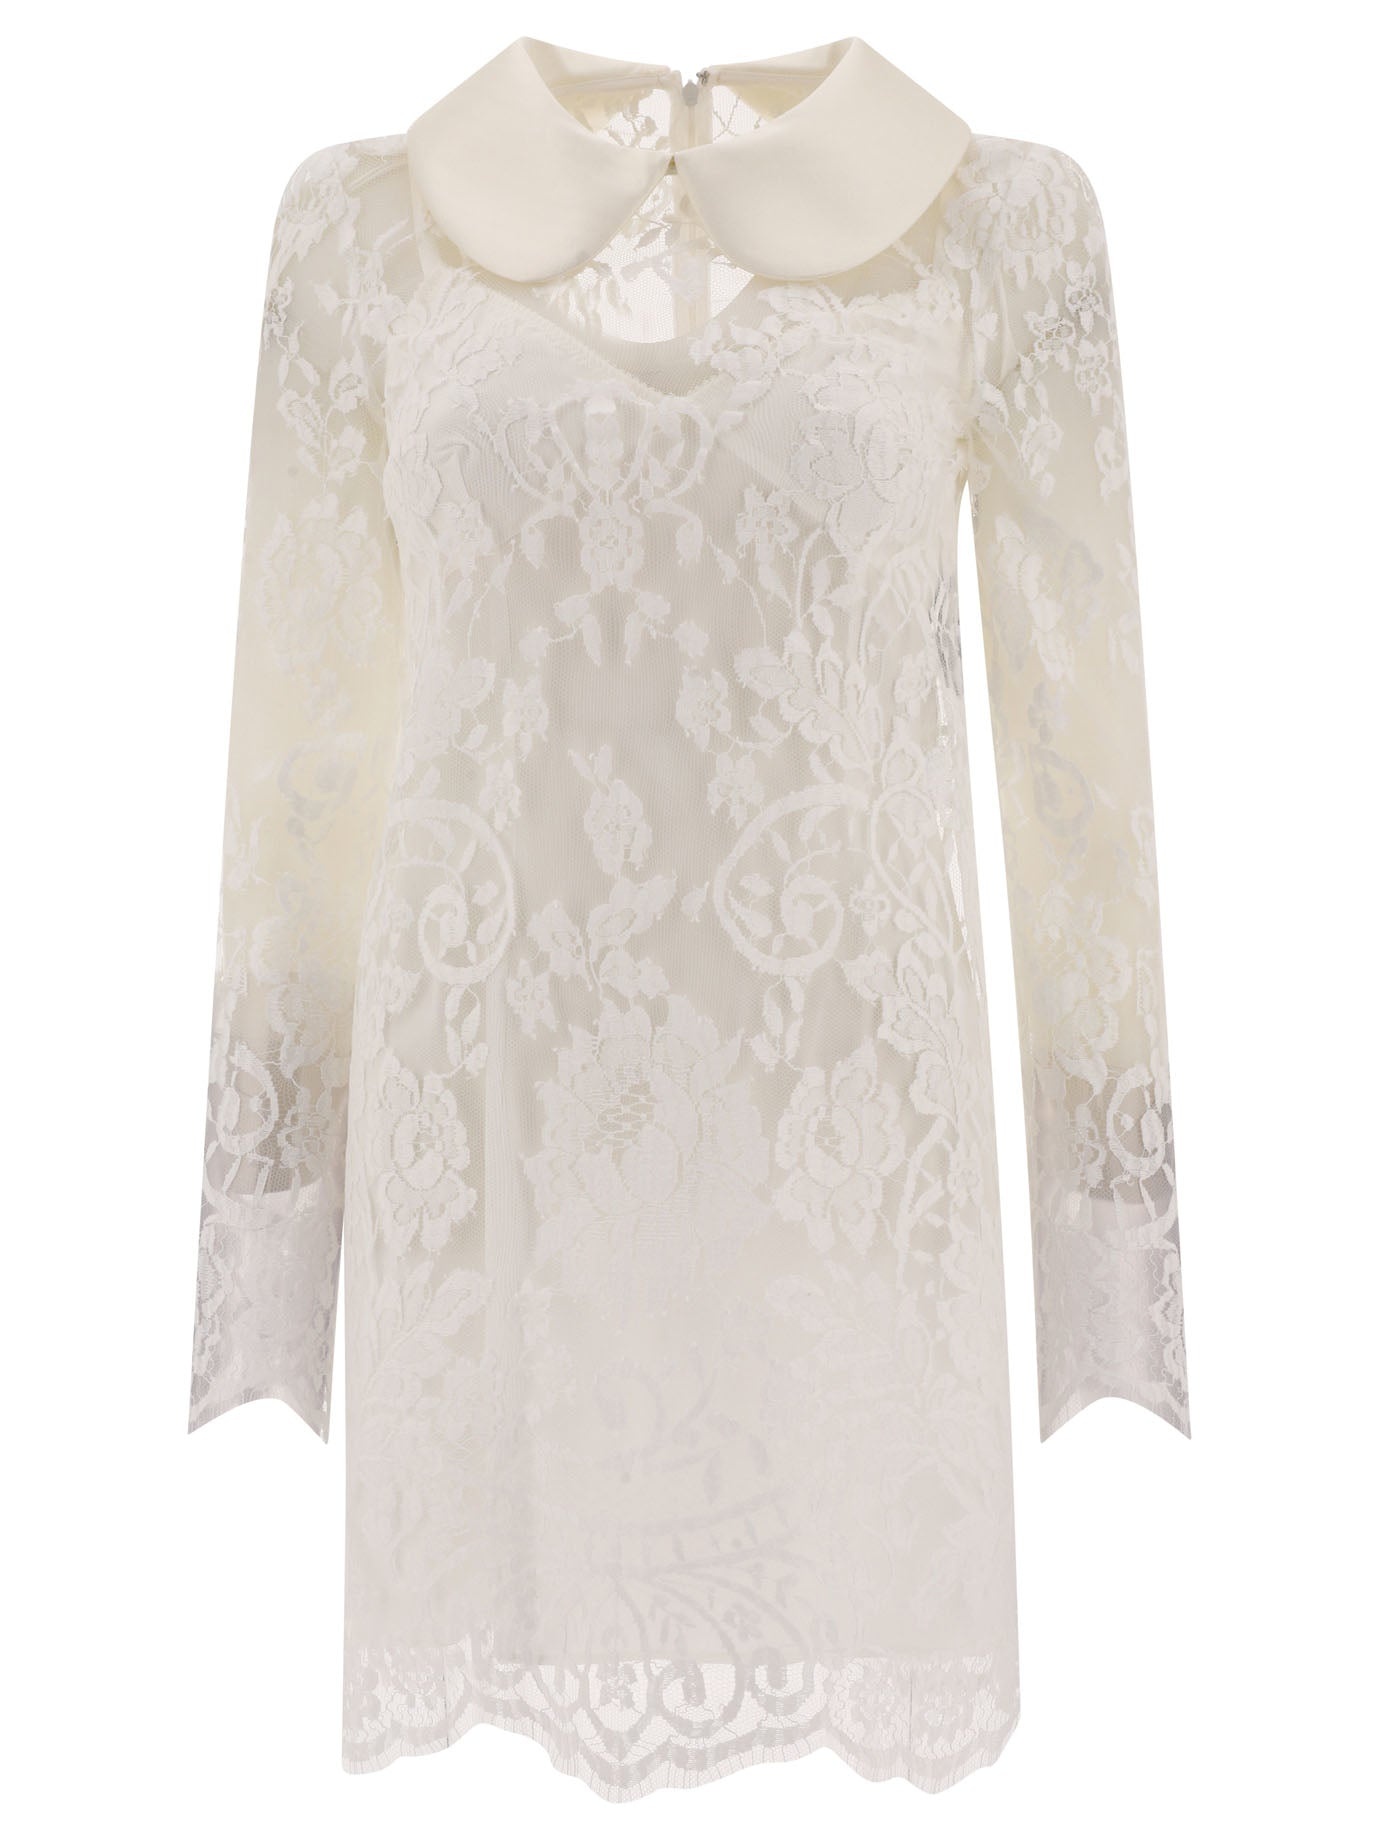 Dolce & Gabbana Lace Dress With Satin Collar - 1